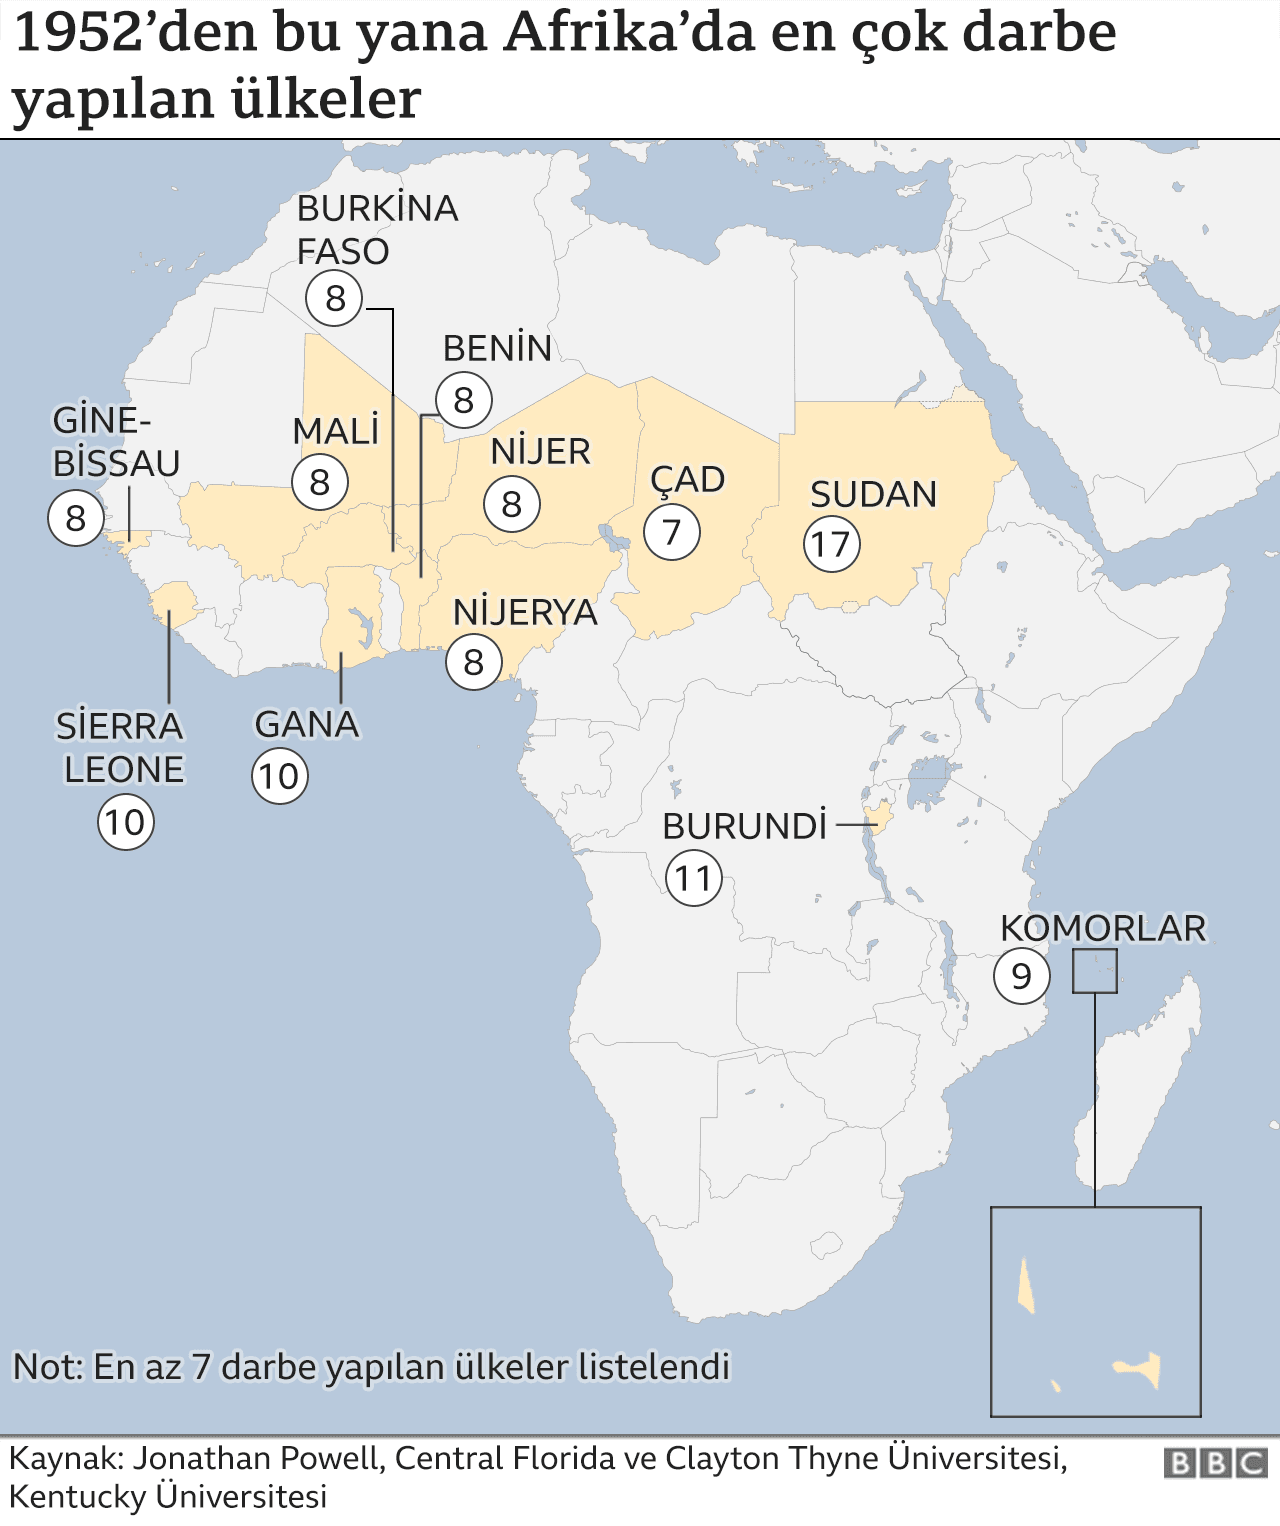 Sudan'da darbe: Afrika'da askeri müdahaleler neden artıyor?